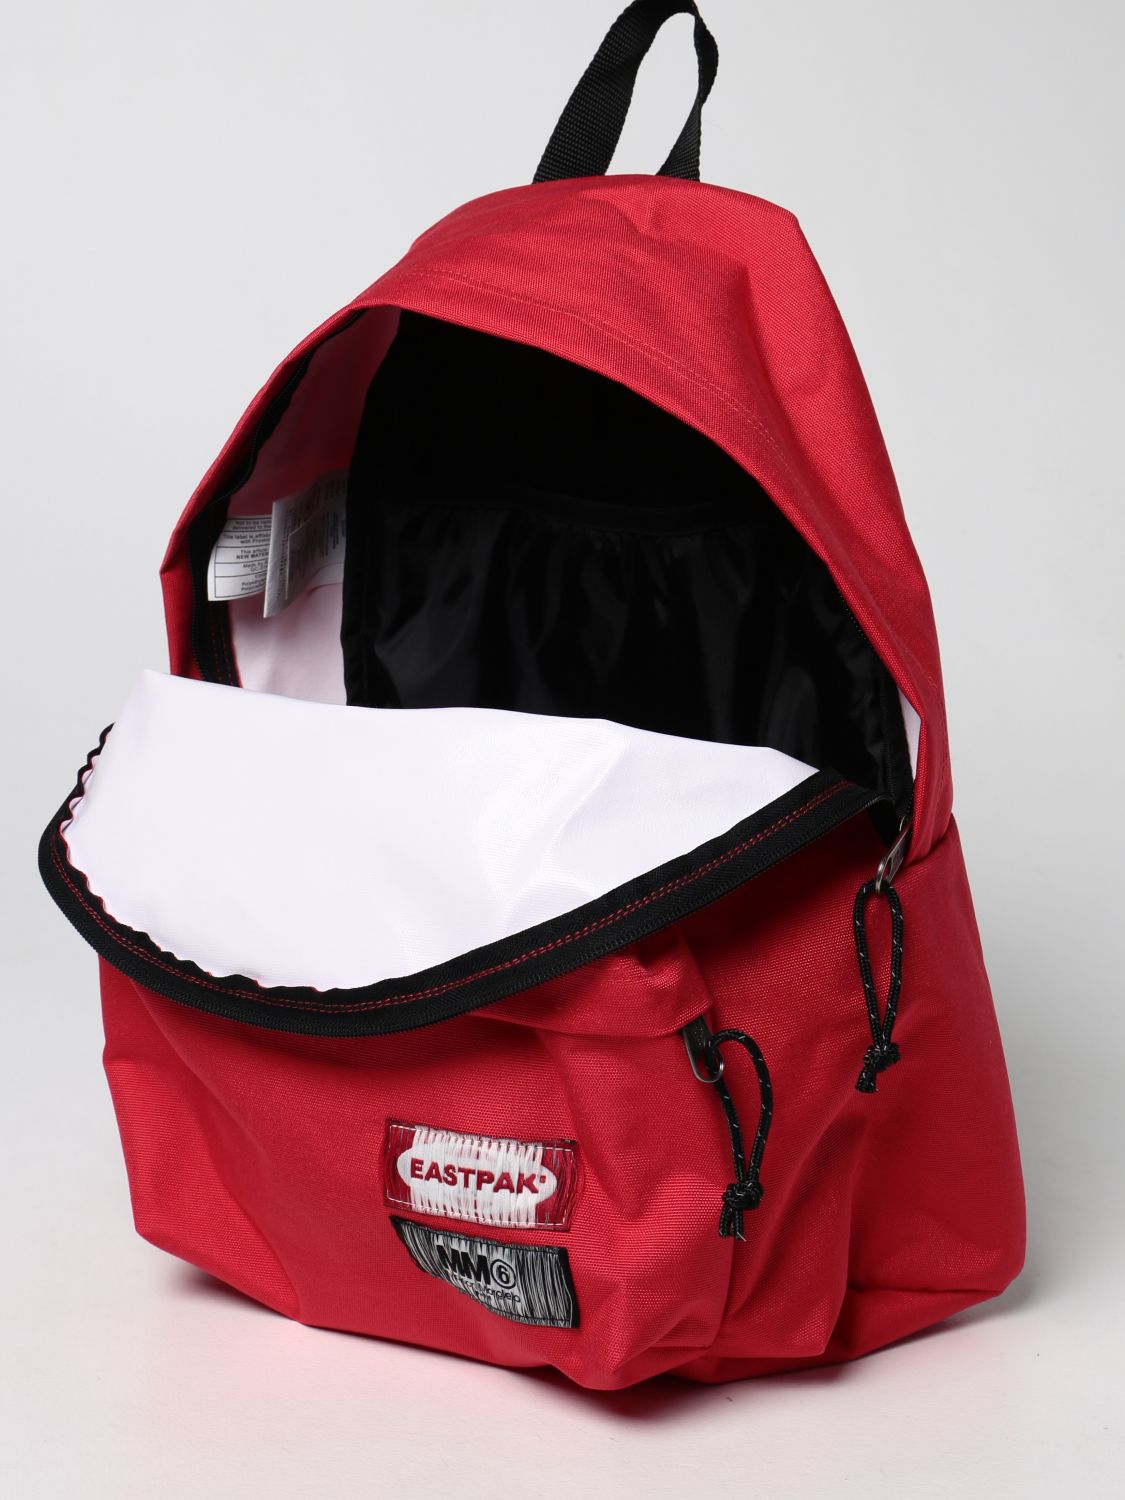 Backpack Eastpak: Mm6 Maison Margiela x Eastpak nylon backpack red 4